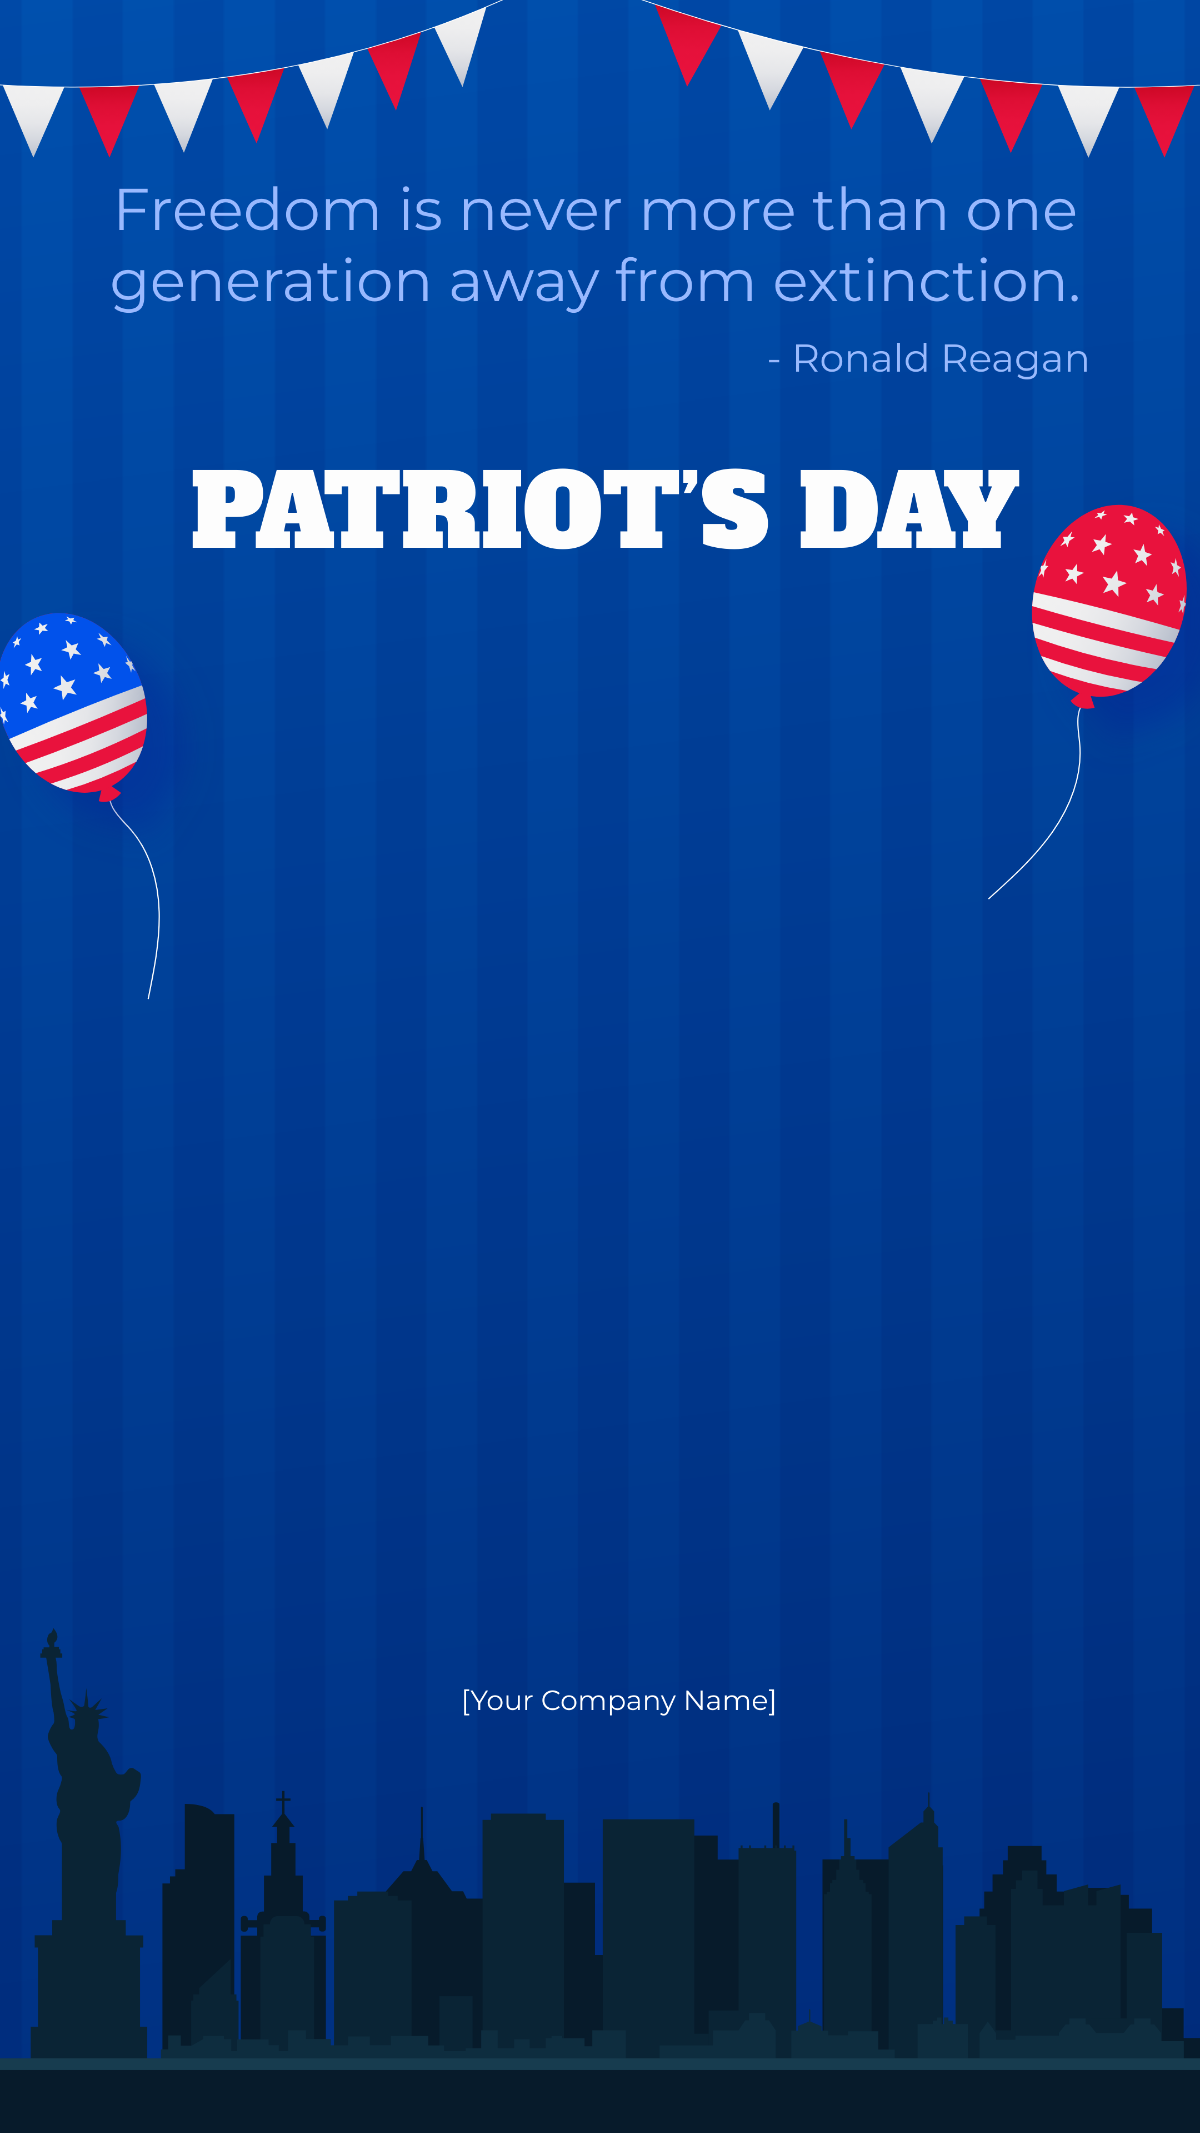 Patriot's Day Instagram